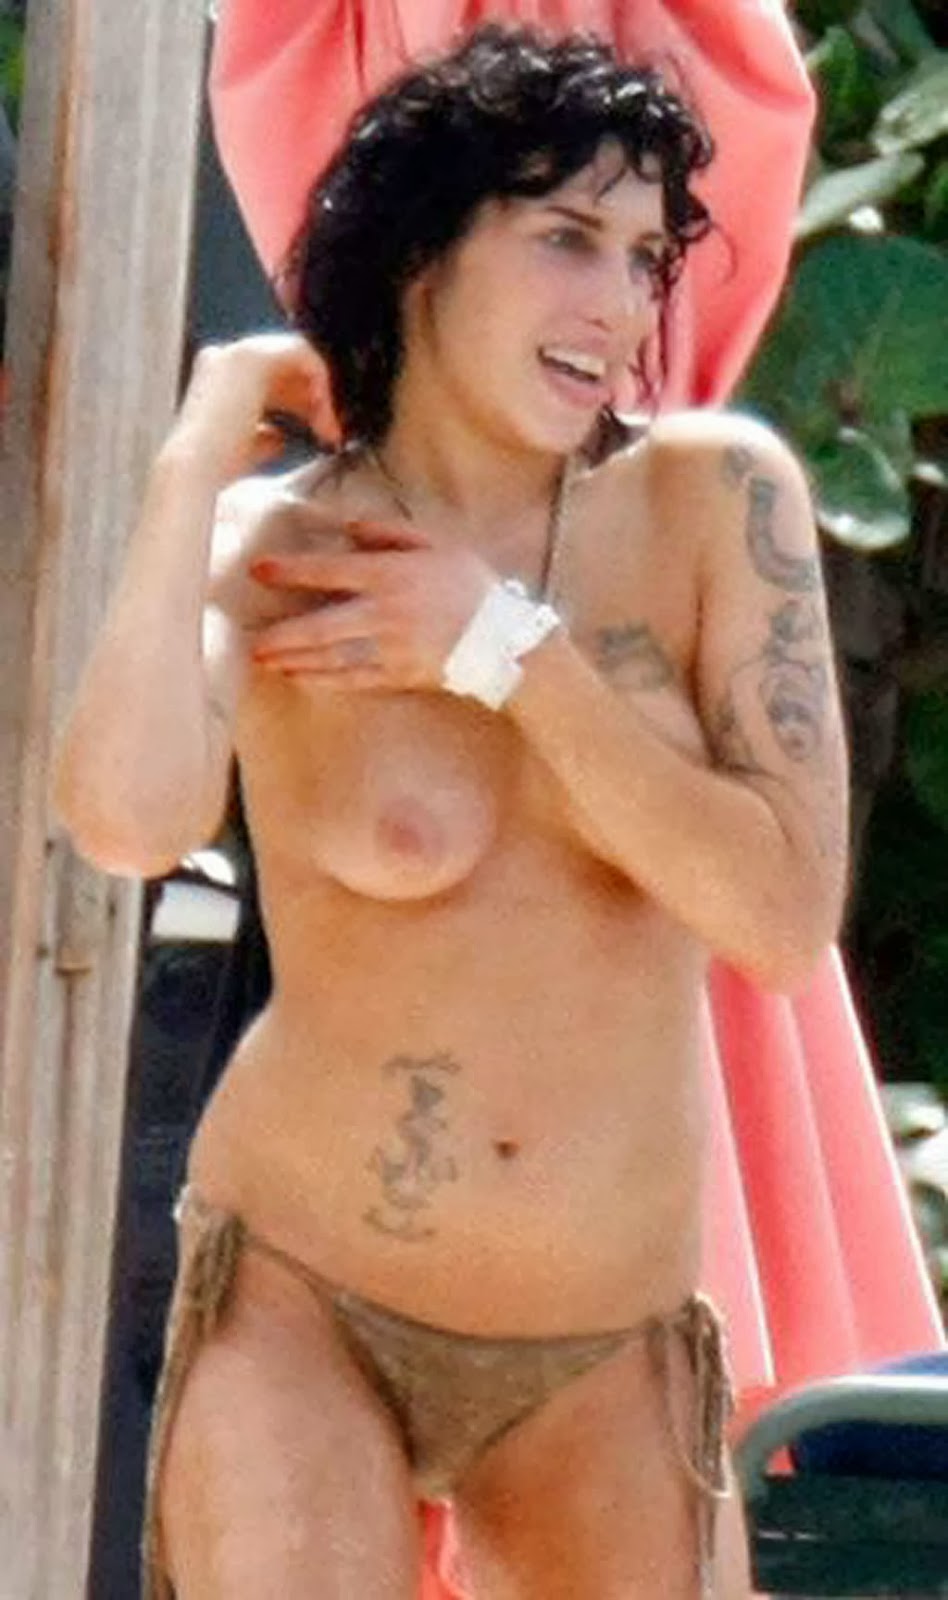 Celebrity Nude Century: Amy Winehouse (Singer / "Rehab") .